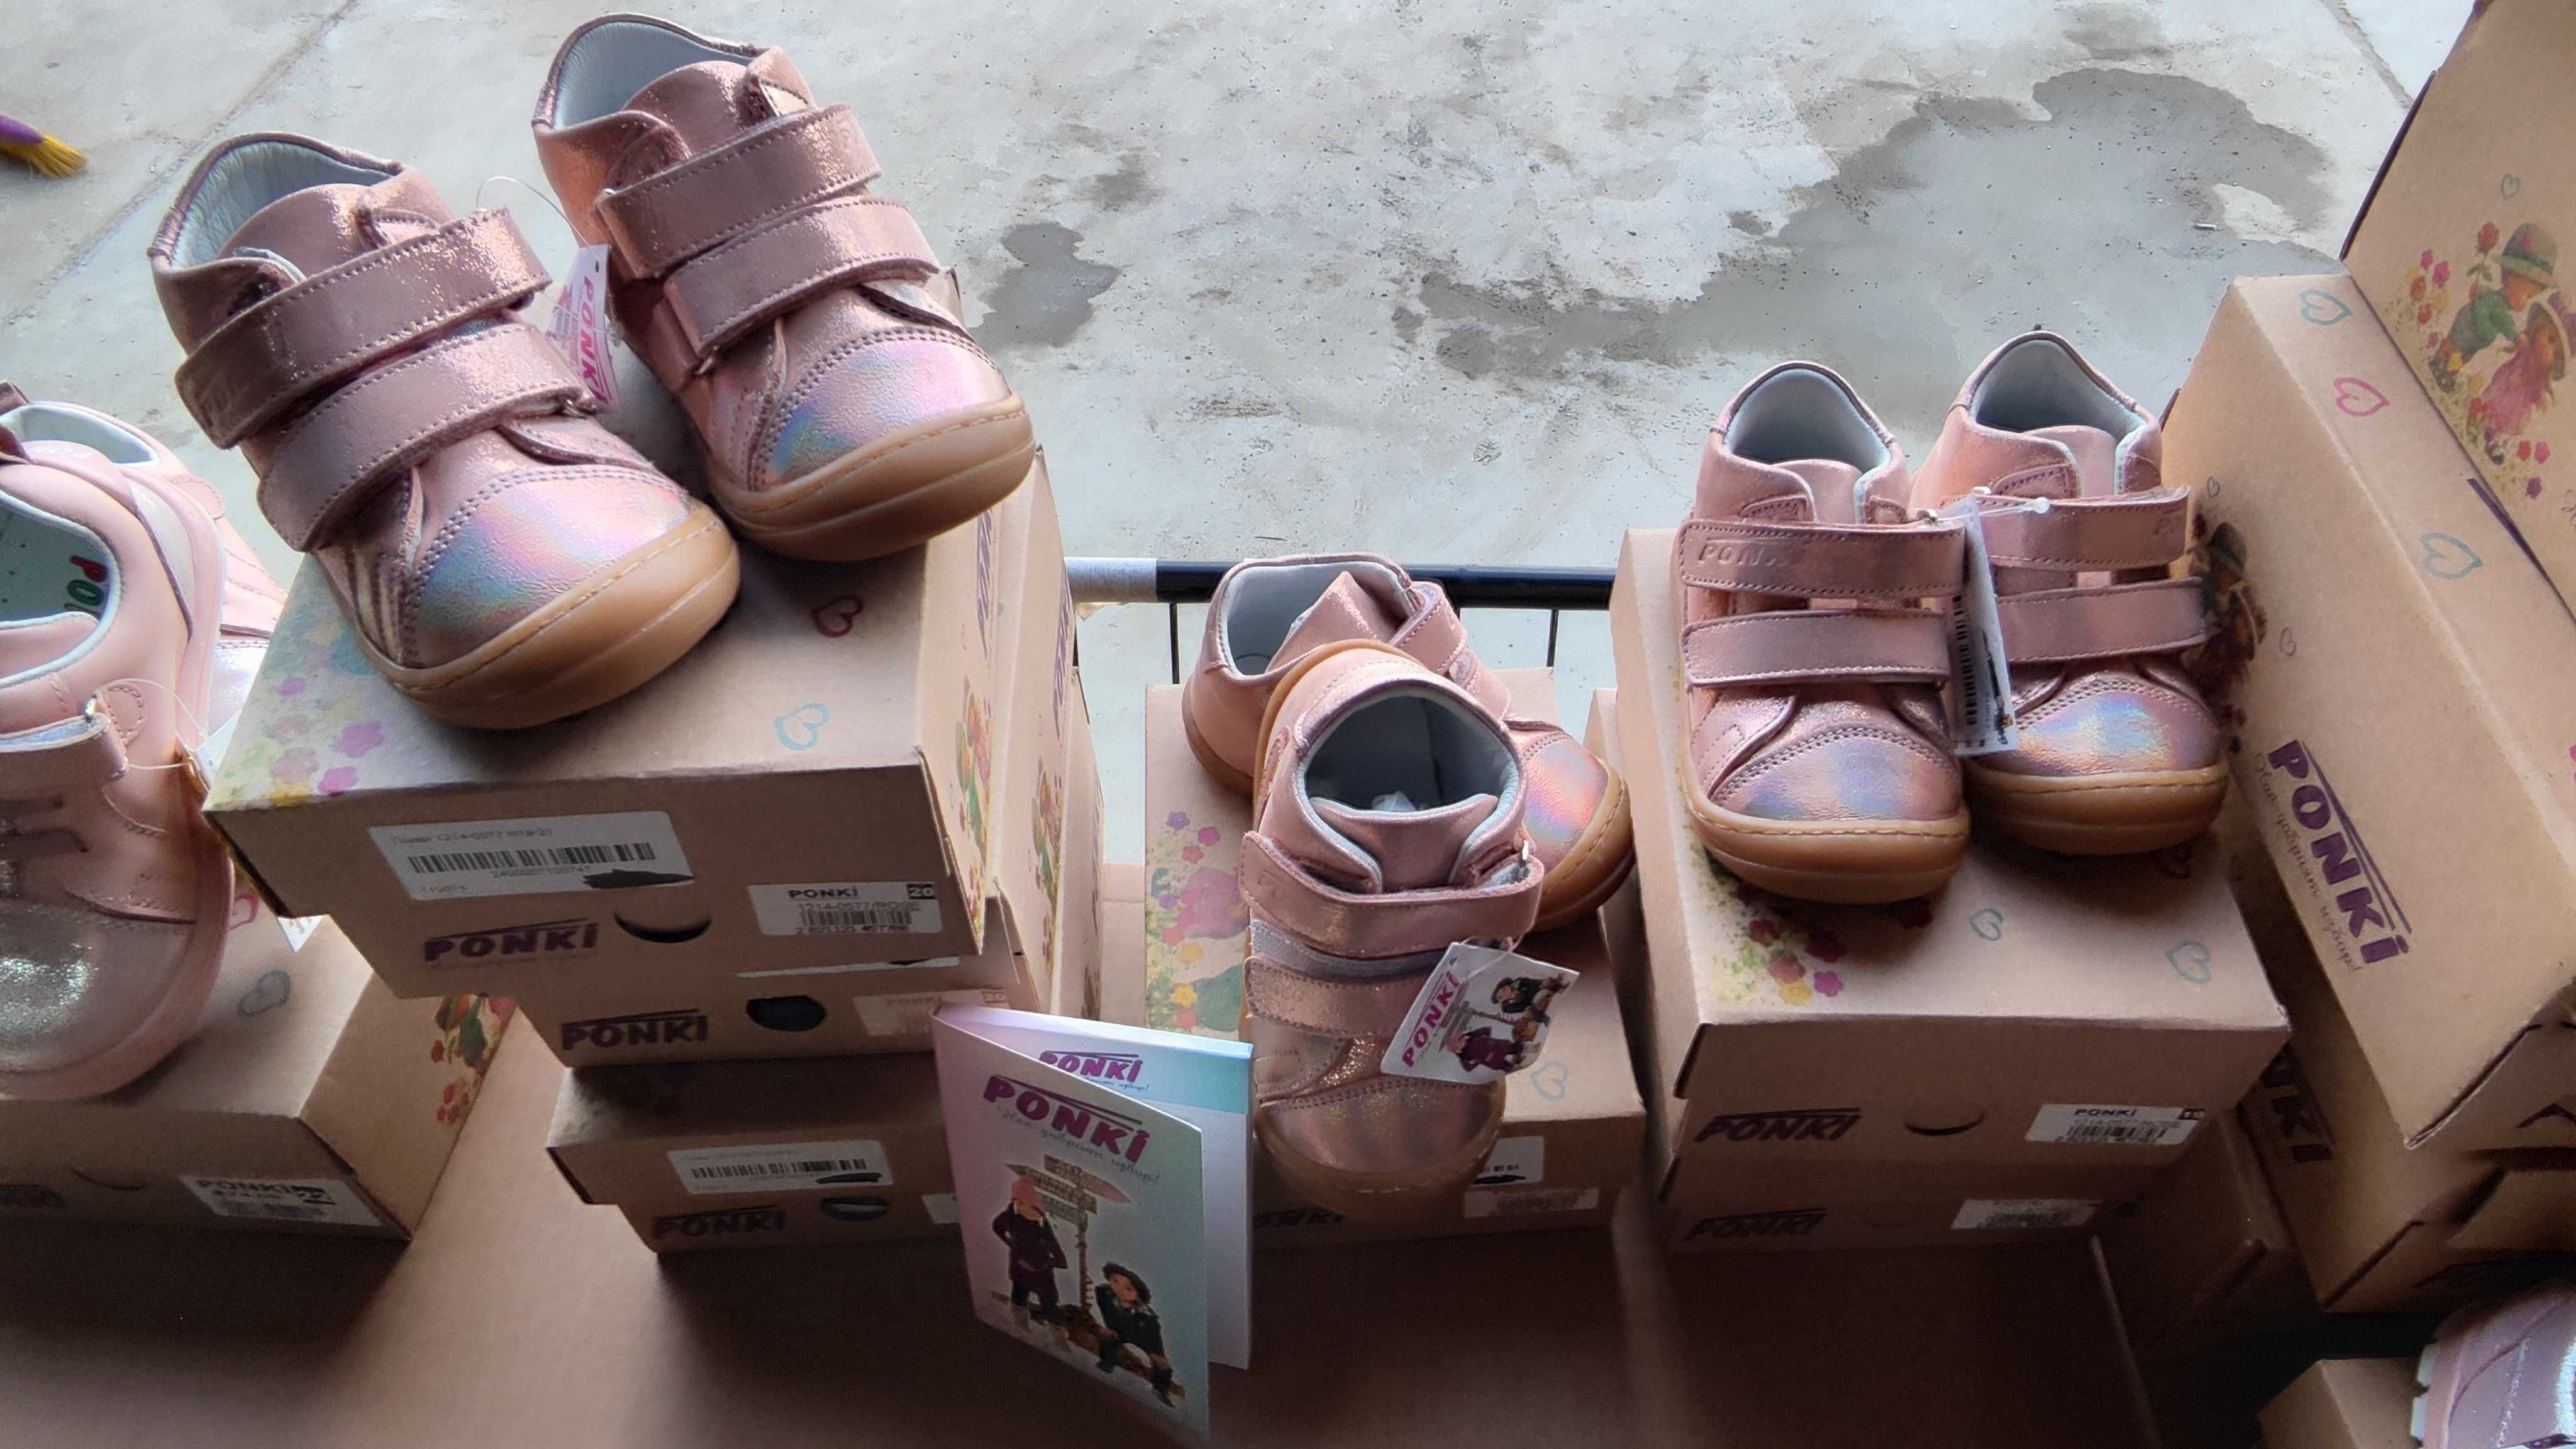 Ponki Обувки -розови -нови 22 чифта номера 20 до 25